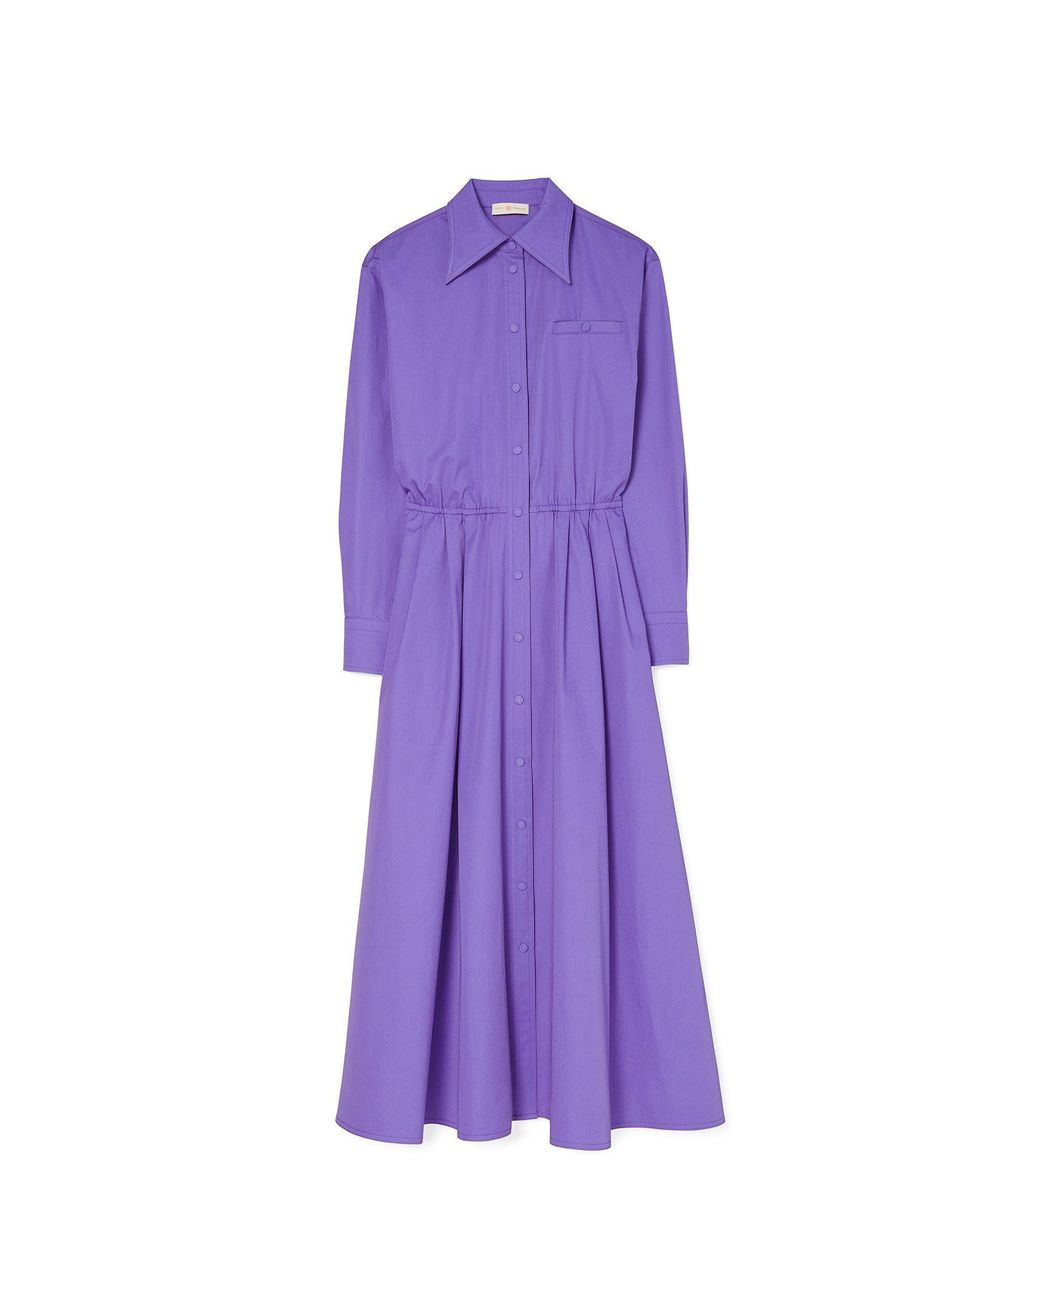 Tory Burch Eleanor Cotton Poplin Dress in Purple | Lyst